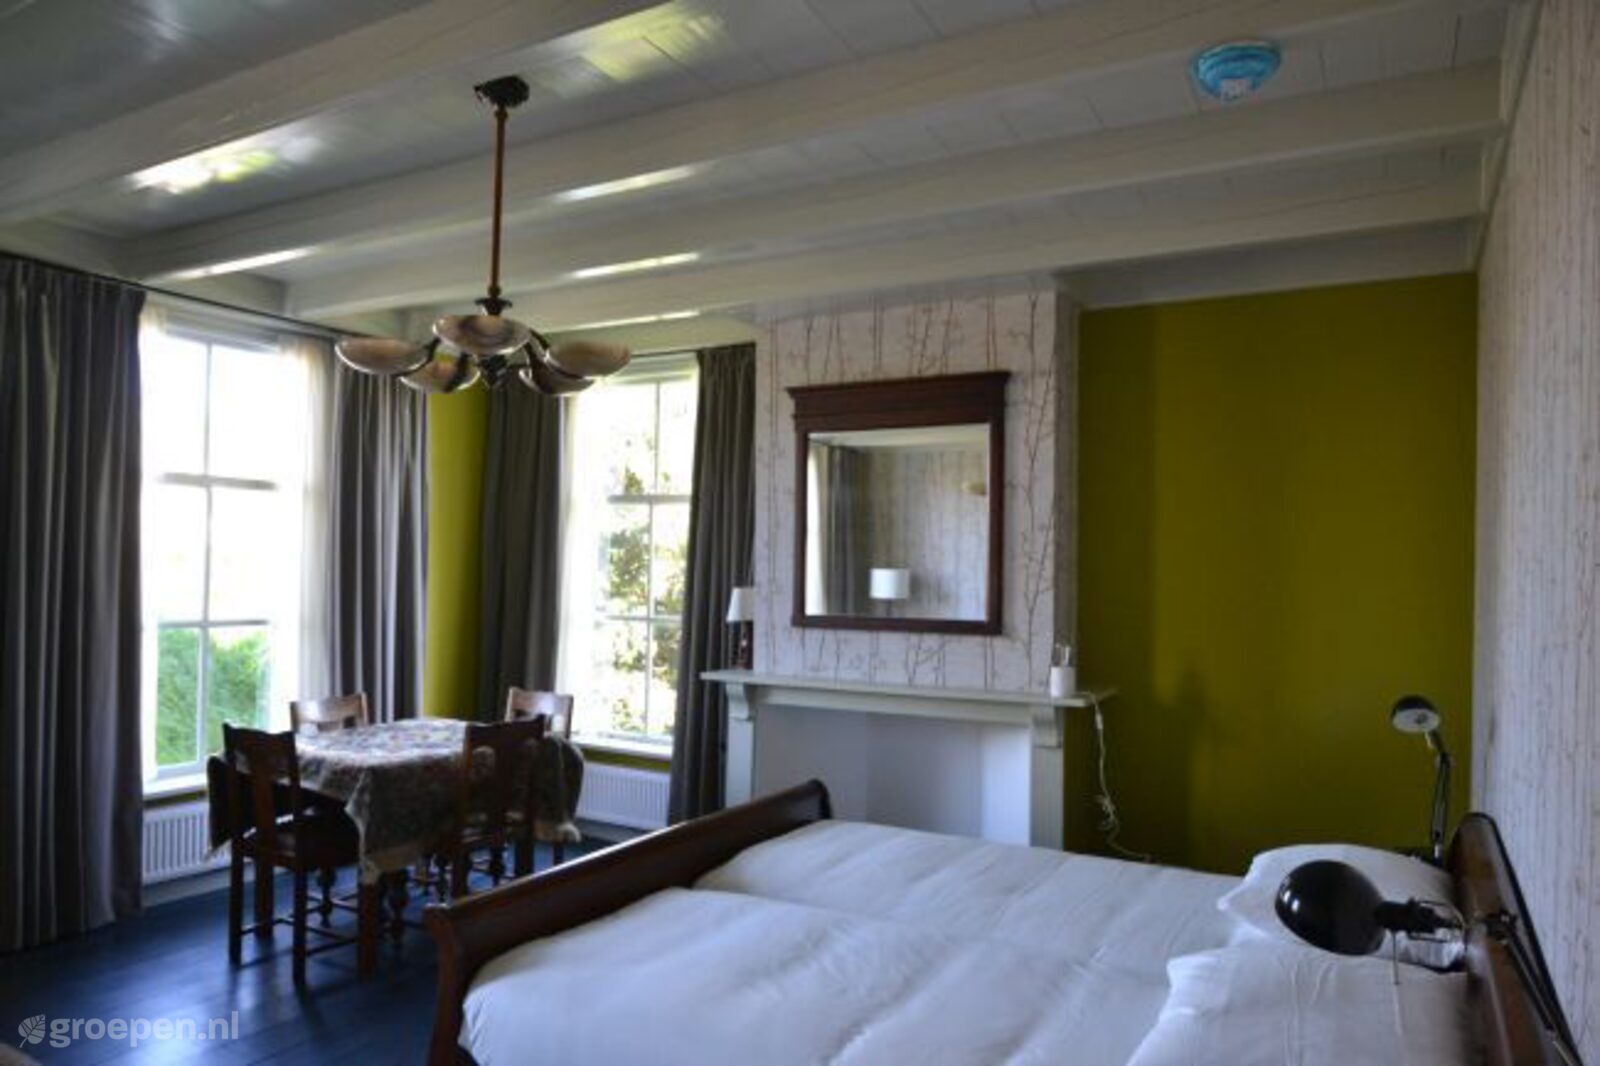 Group accommodation Rijswijk